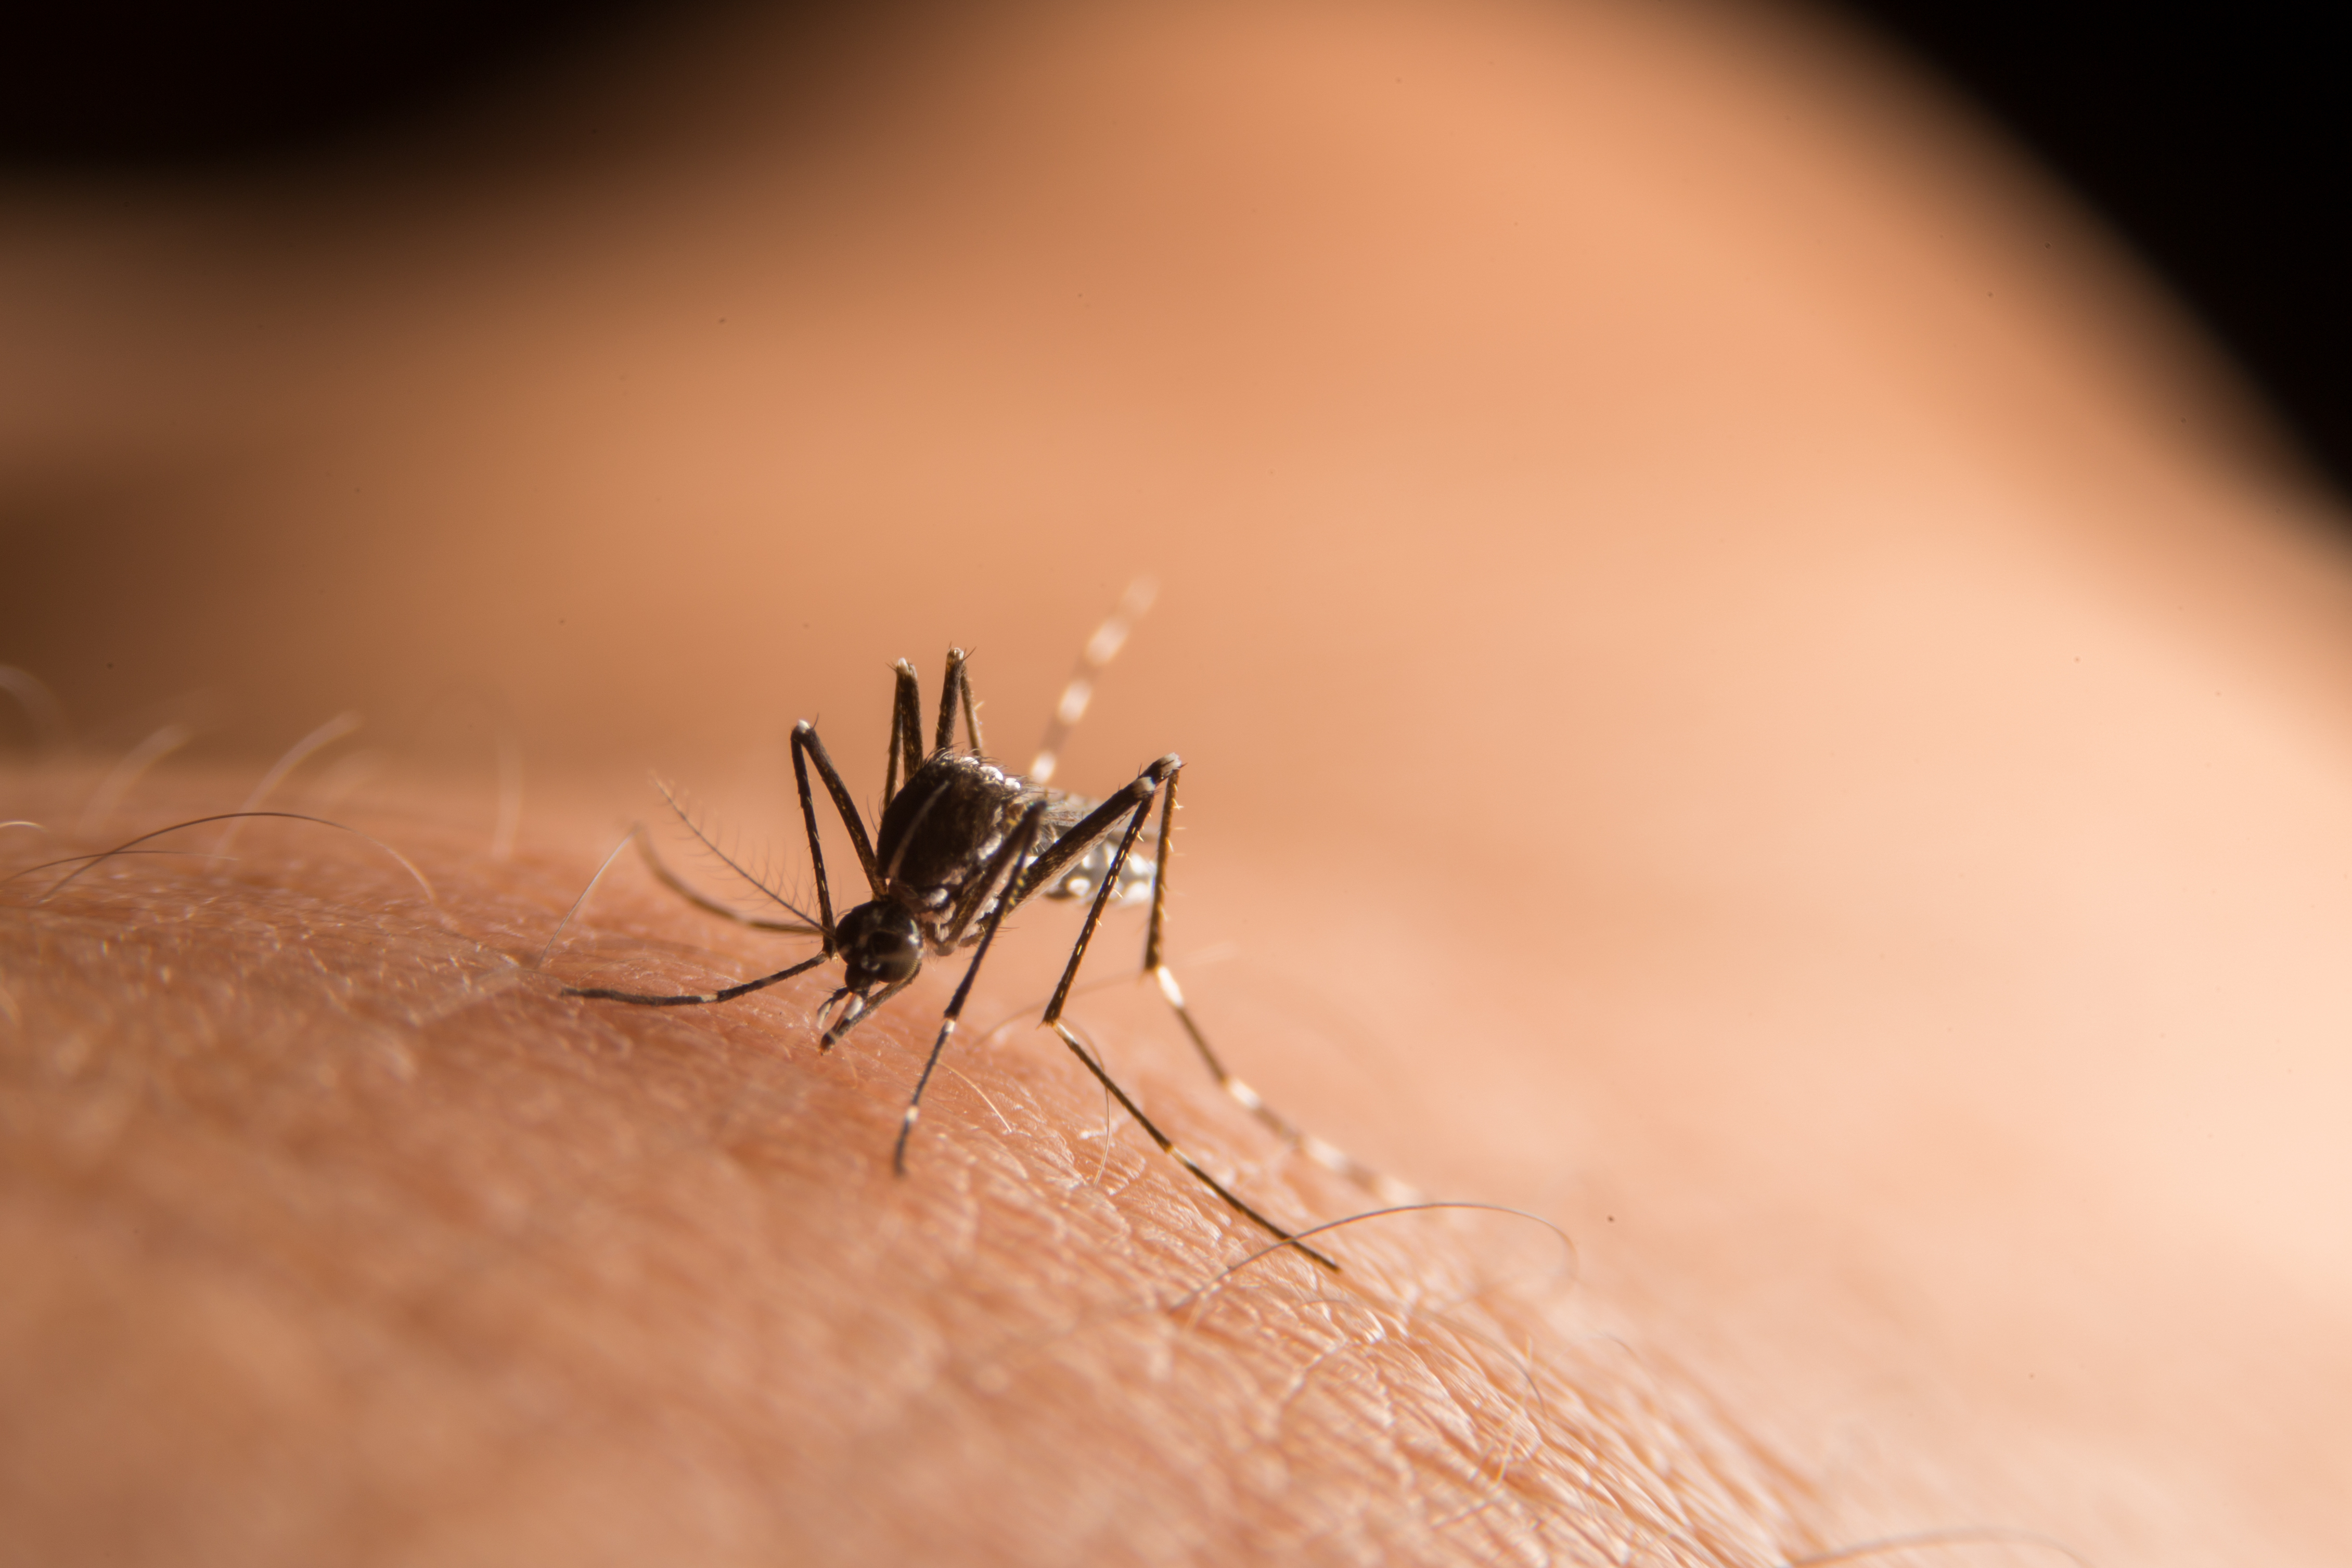     Les autorités sanitaires gardent un oeil sur la dengue

